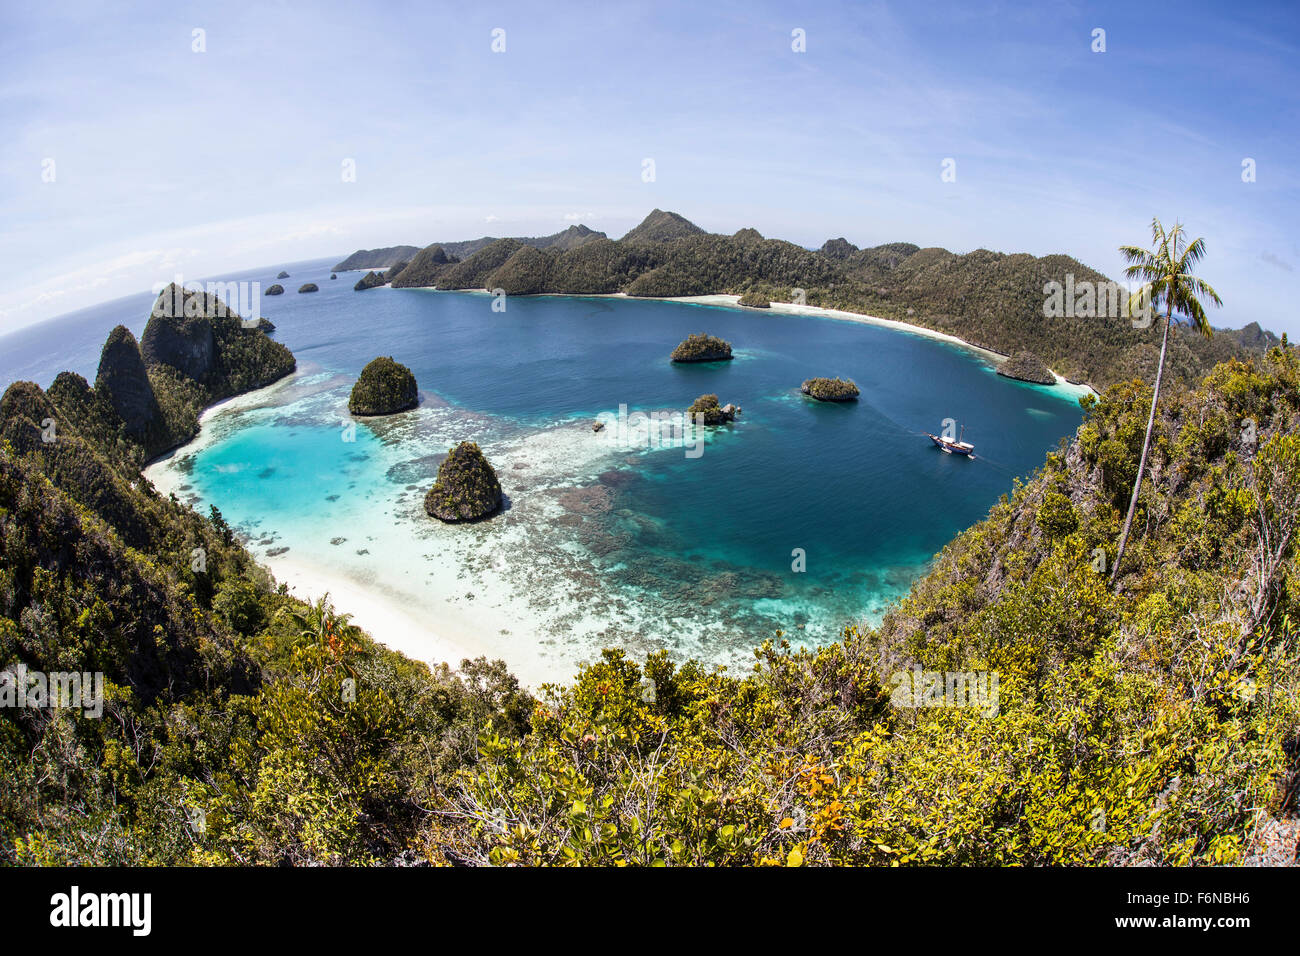 Zerklüfteten Kalksteininseln umgeben von einer wunderschönen Lagune in einem abgelegenen Teil von Raja Ampat, Indonesien. Diese schöne Region nennt man Stockfoto